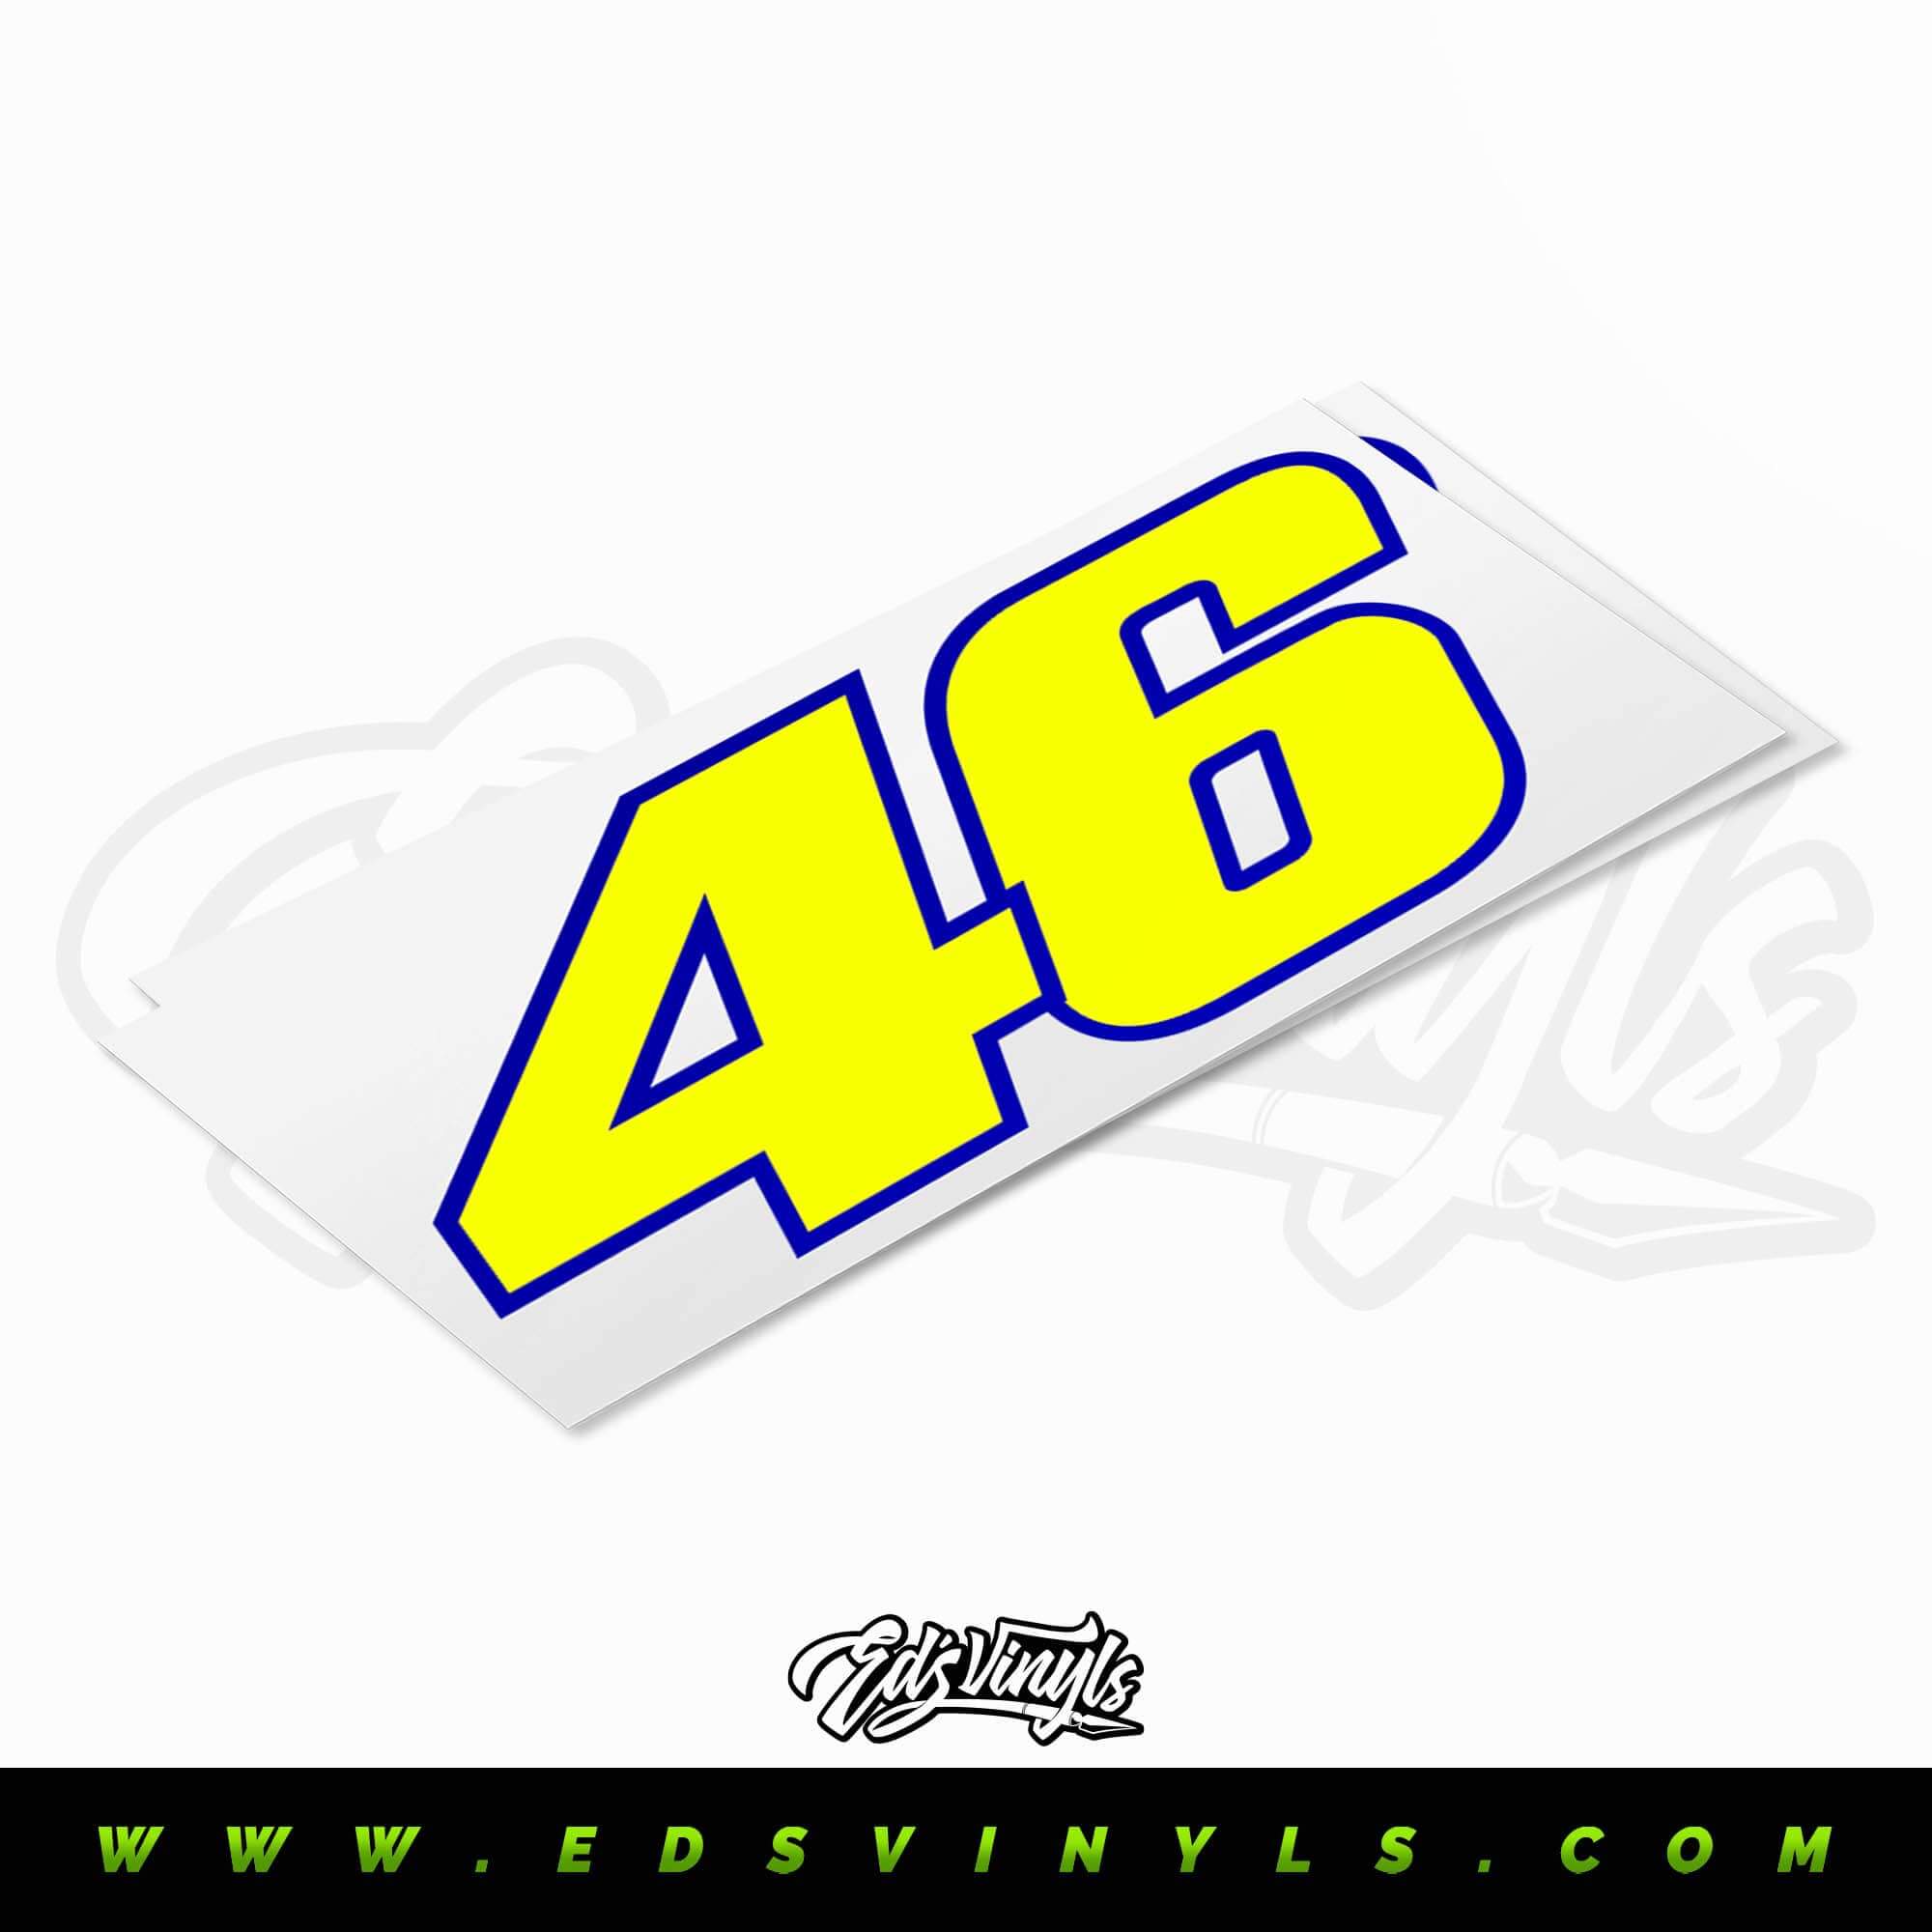 Valentino Rossi 46 - Edsvinyls